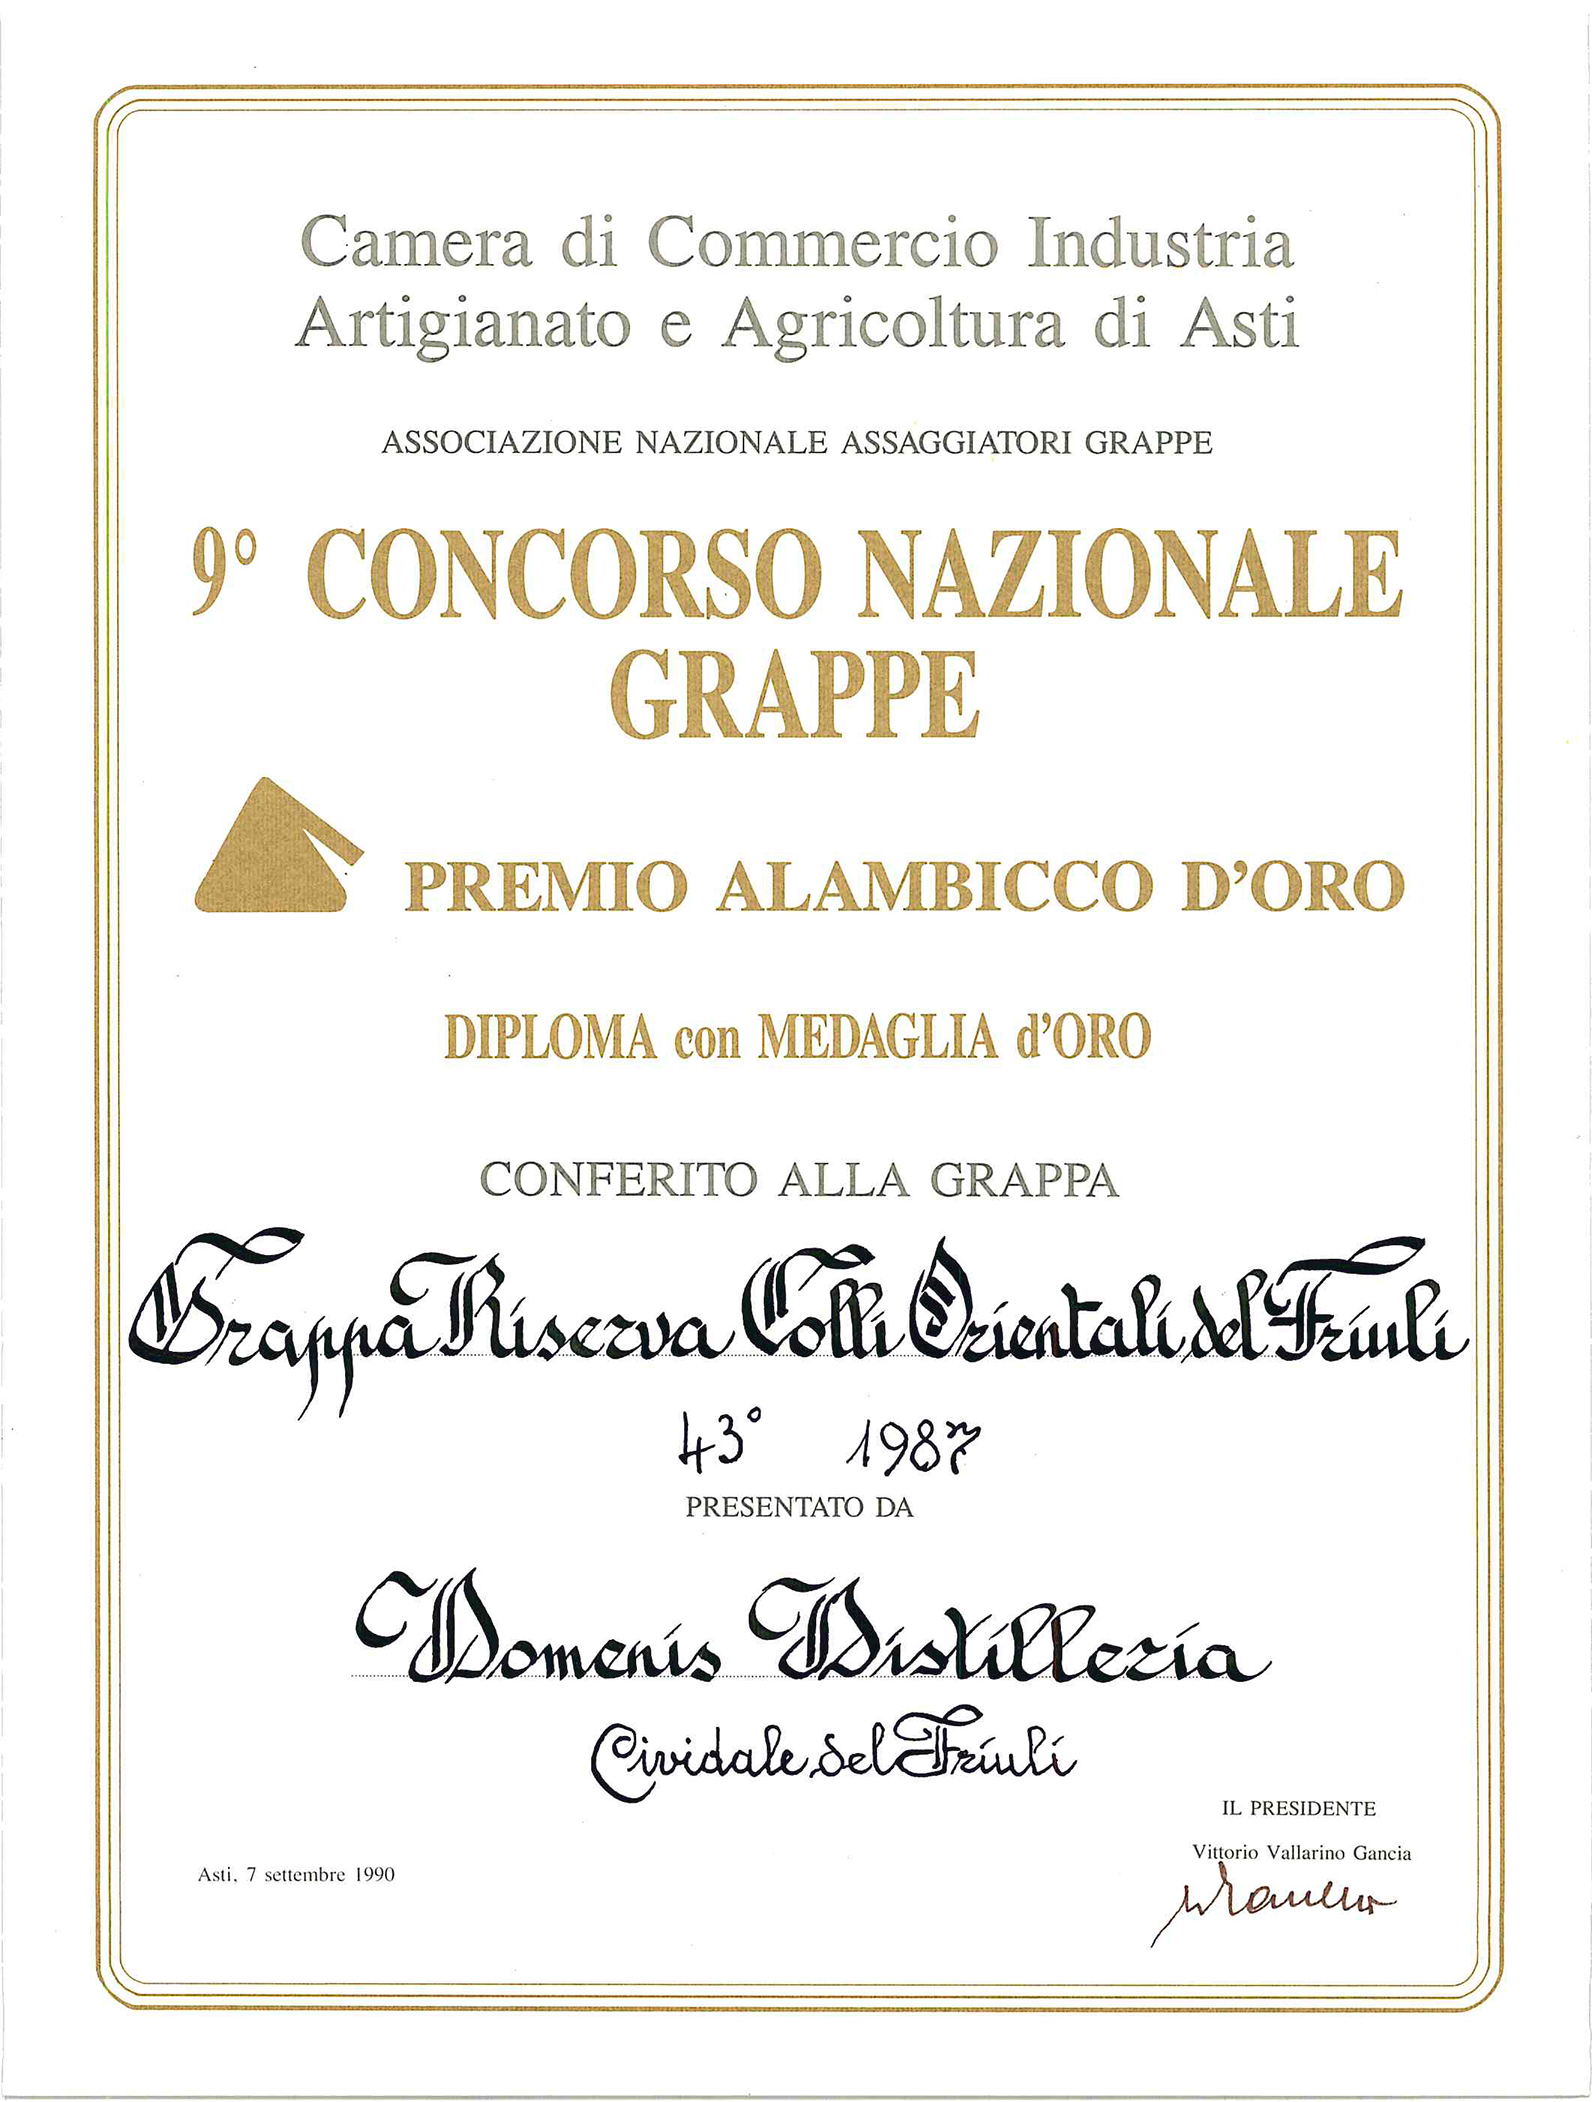 Premio Alambicco d’Oro 1990 – Grappa Riserva Colli Orientali del Friuli 43° 1987